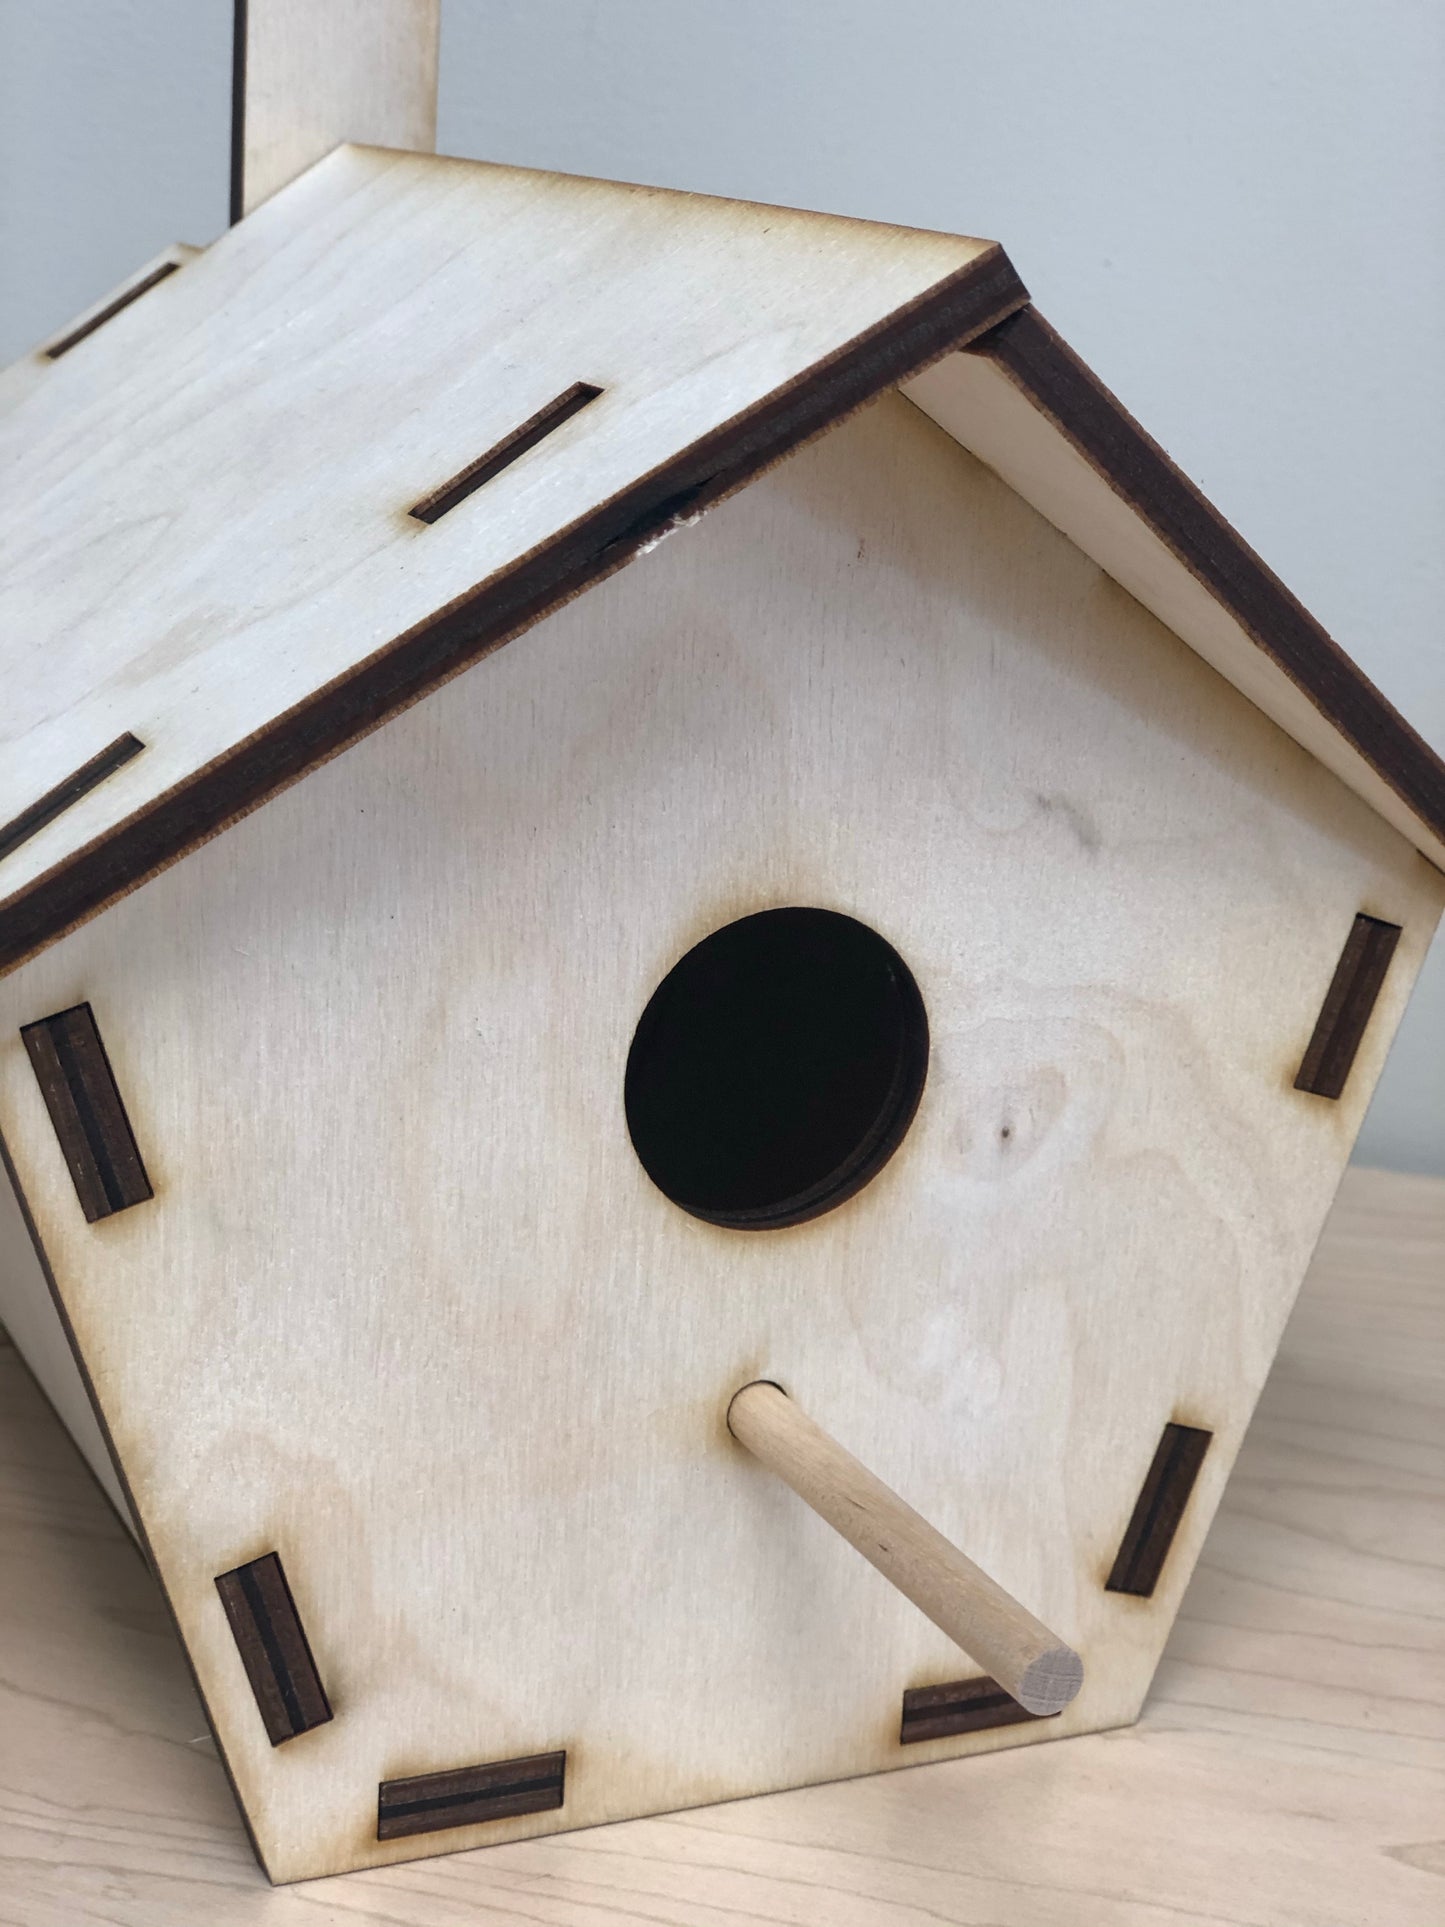 DIY Birdhouse Kit